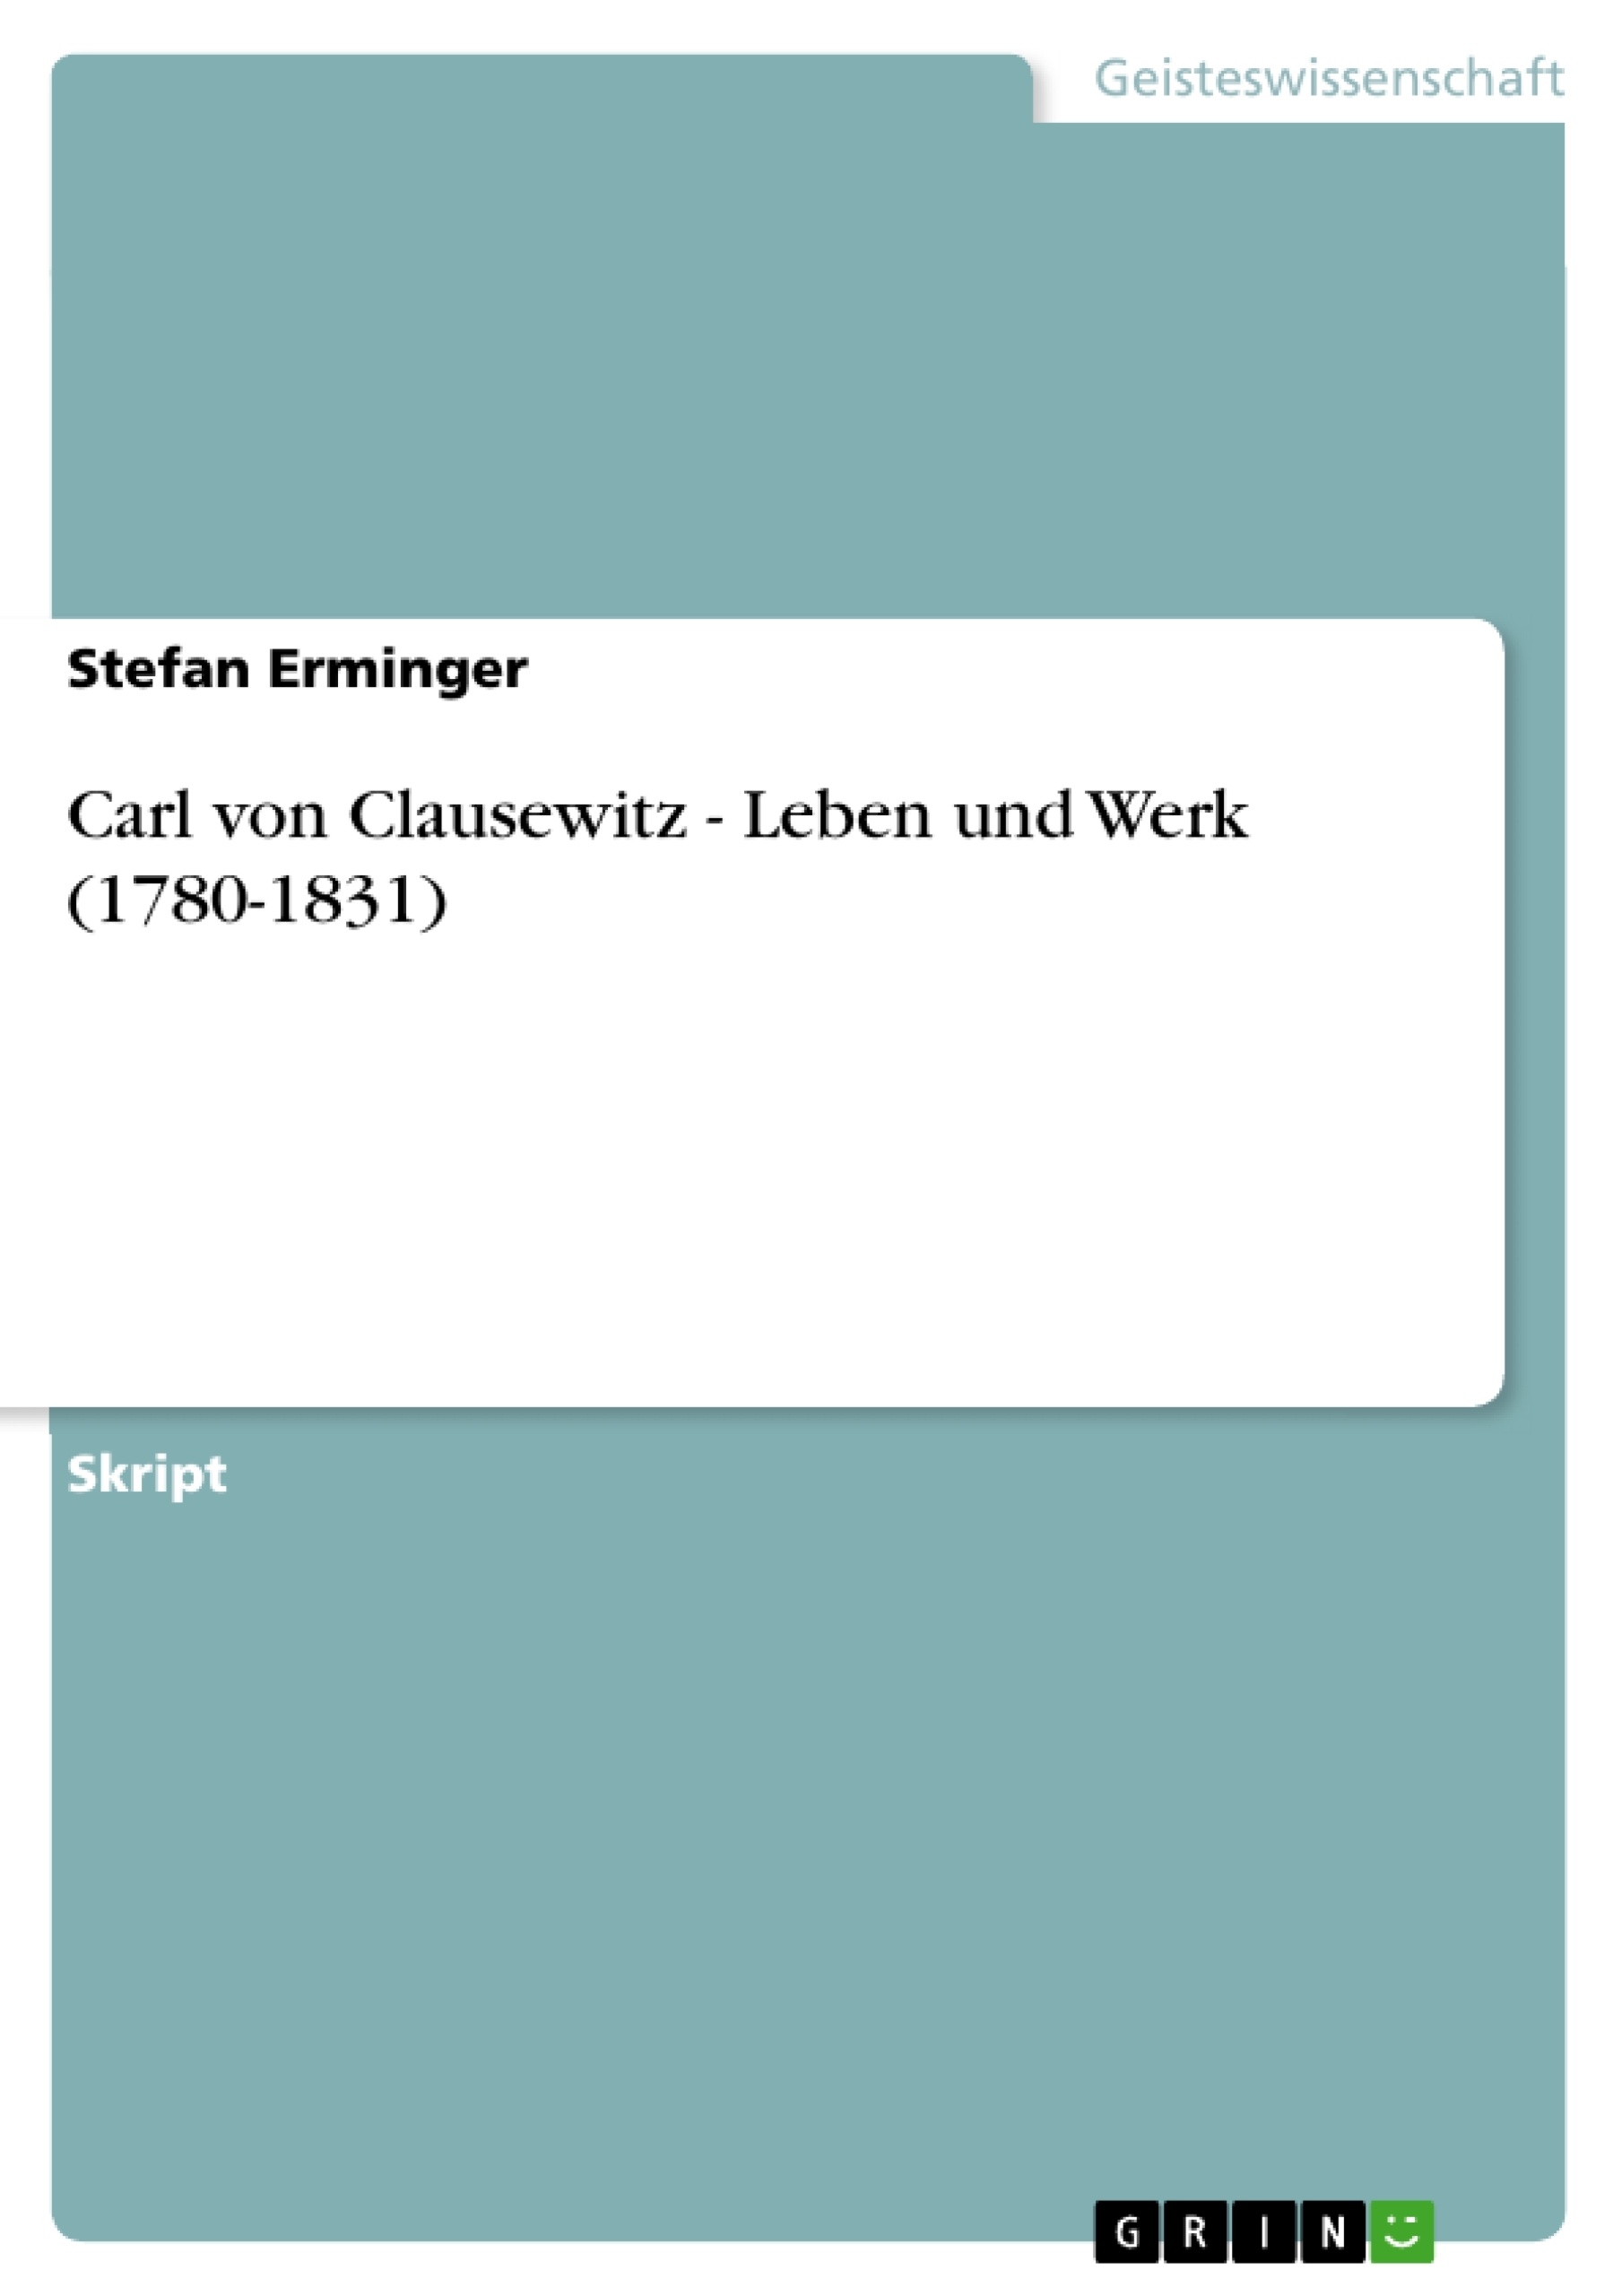 Title: Carl von Clausewitz - Leben und Werk (1780-1831)